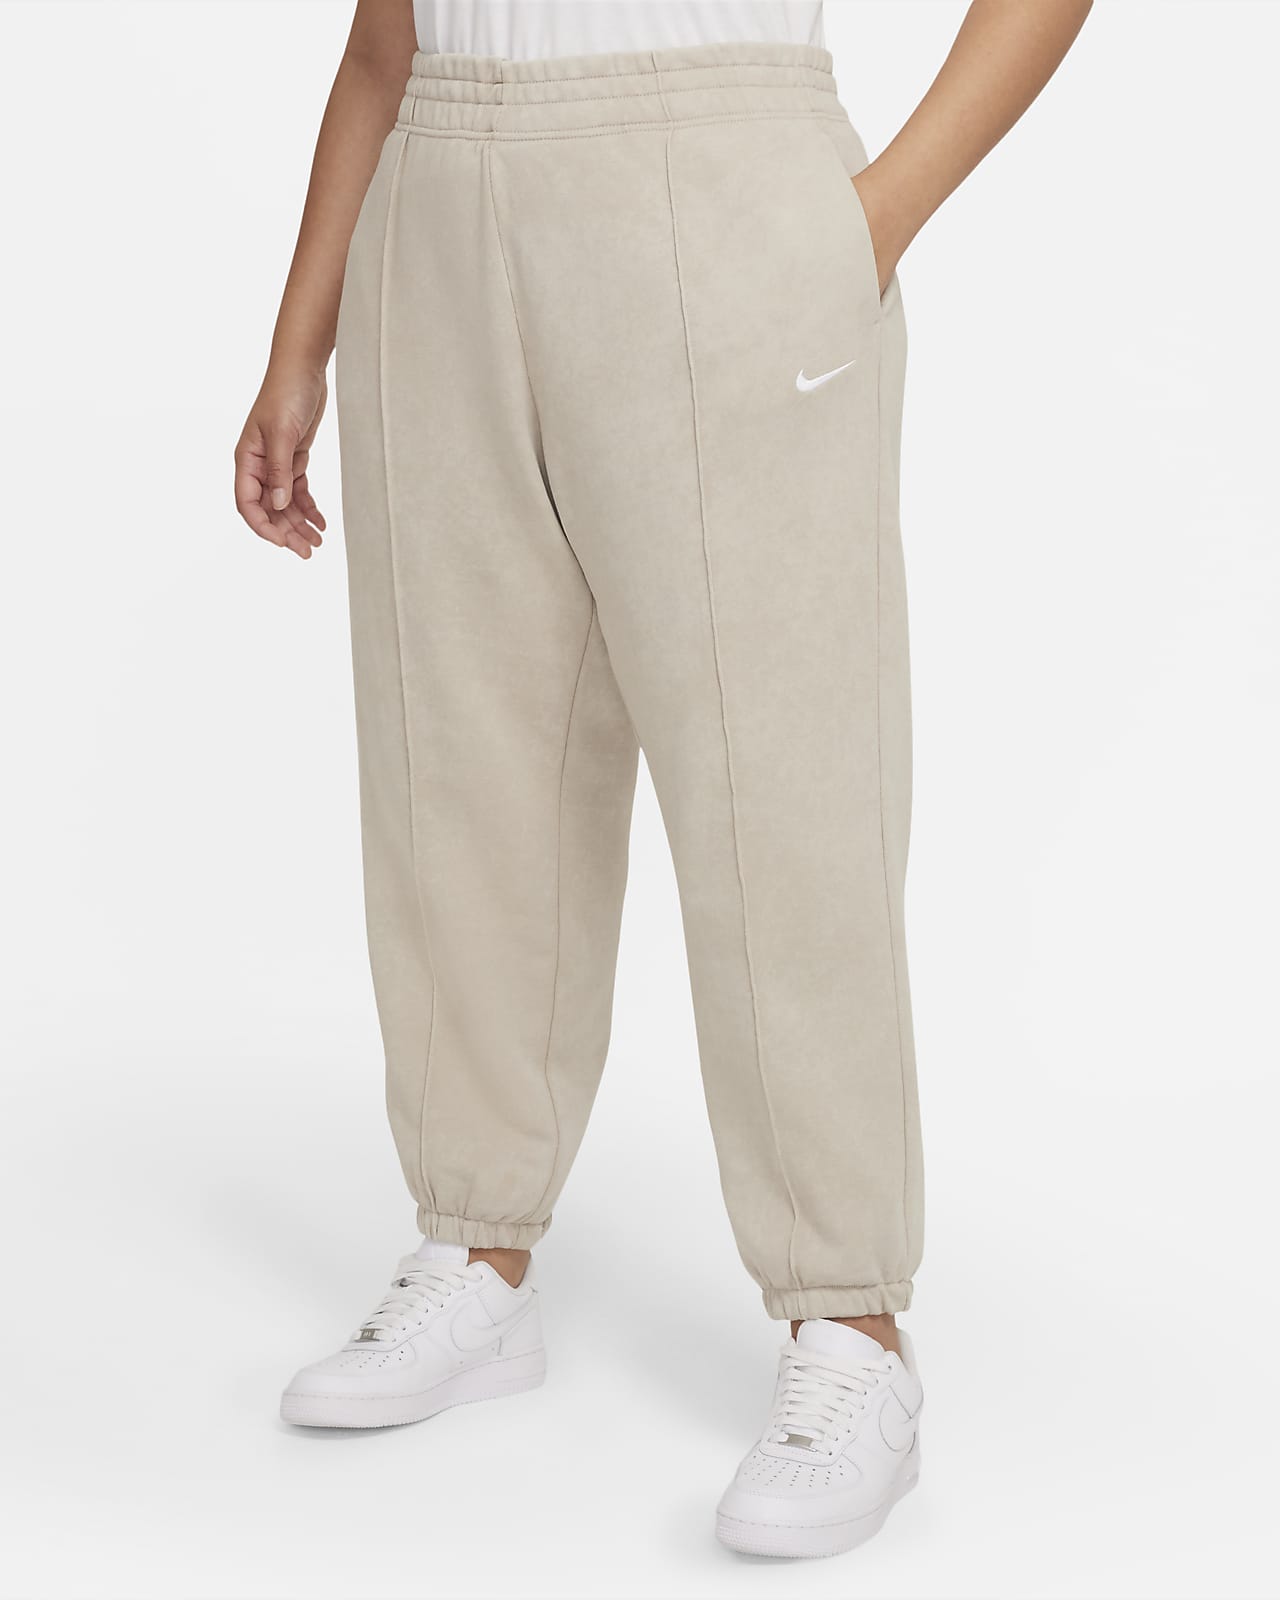 Nike Sportswear Essential Collection Pantalón de Fleece lavado (Talla grande) - Mujer. Nike ES